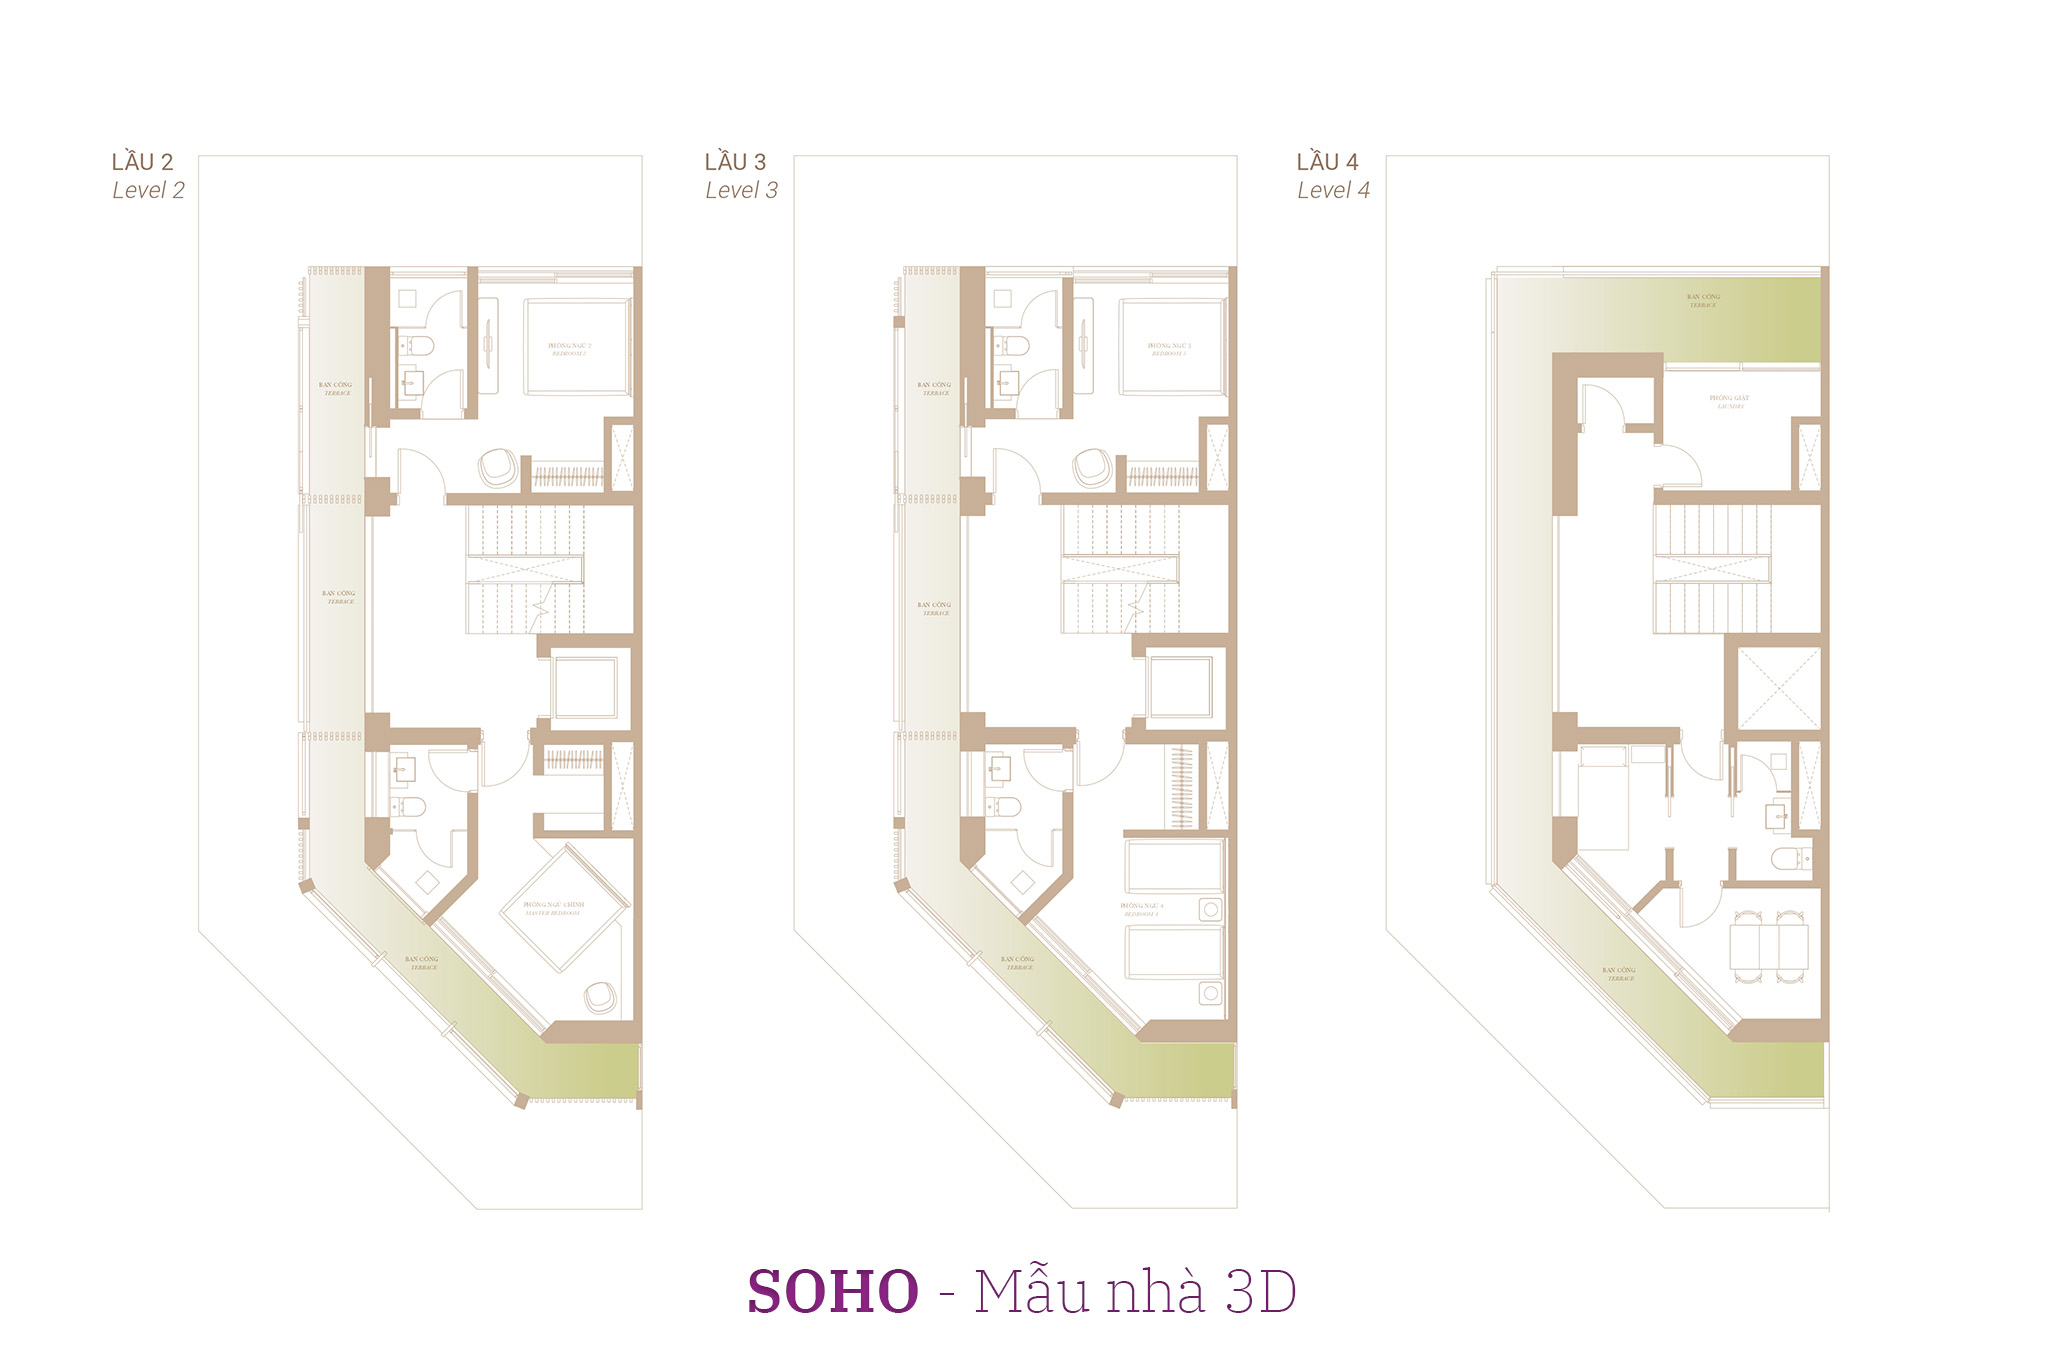 Nhà phố The Global City | Mặt bằng thiết kế nhà phố SOHO - Mẫu nhà 3D